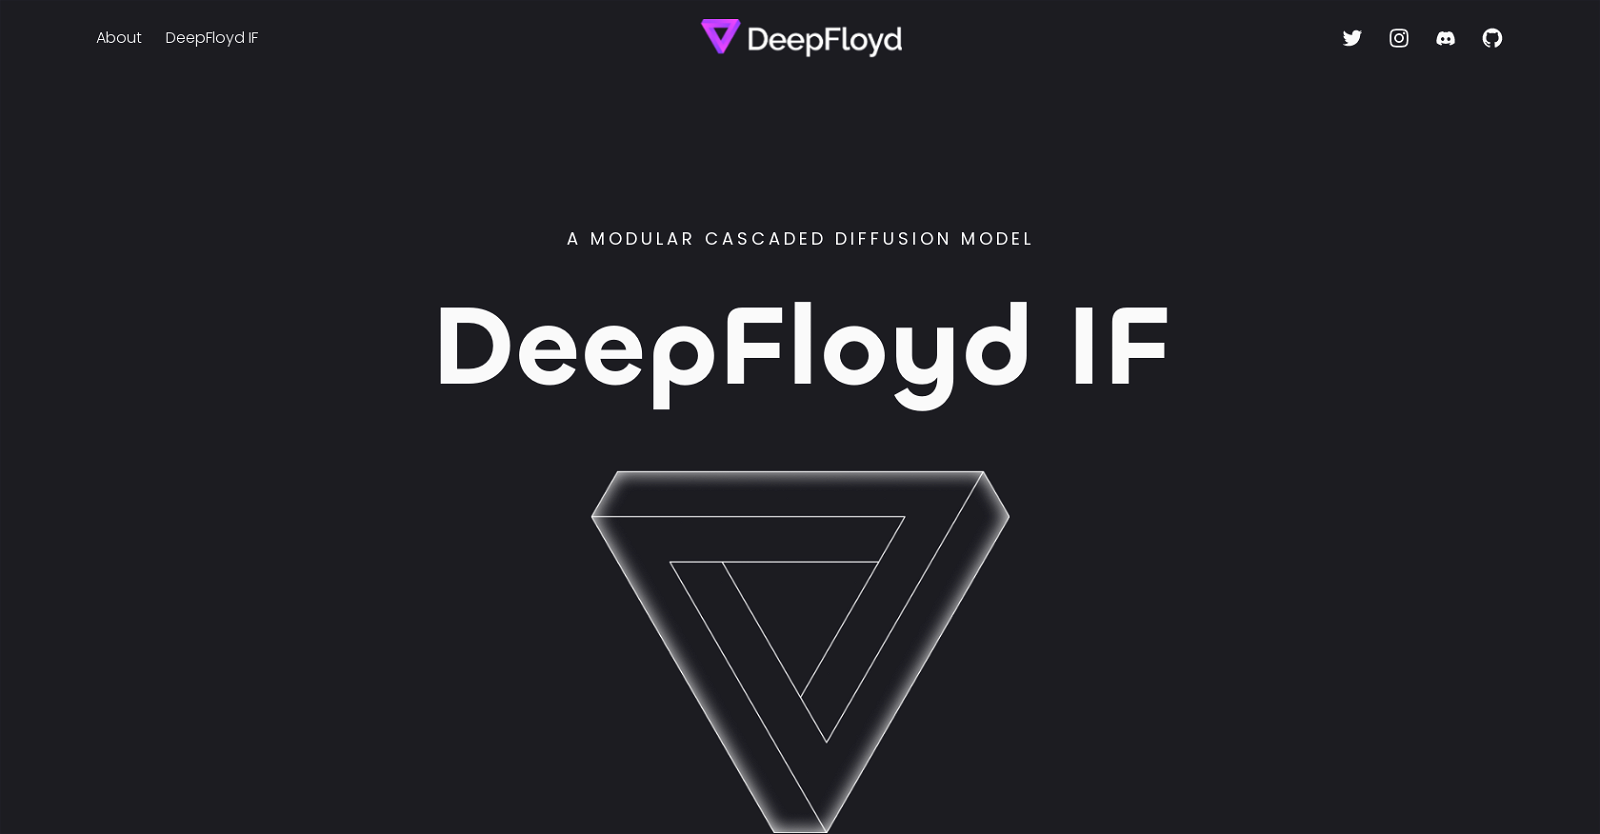 DeepFloyd